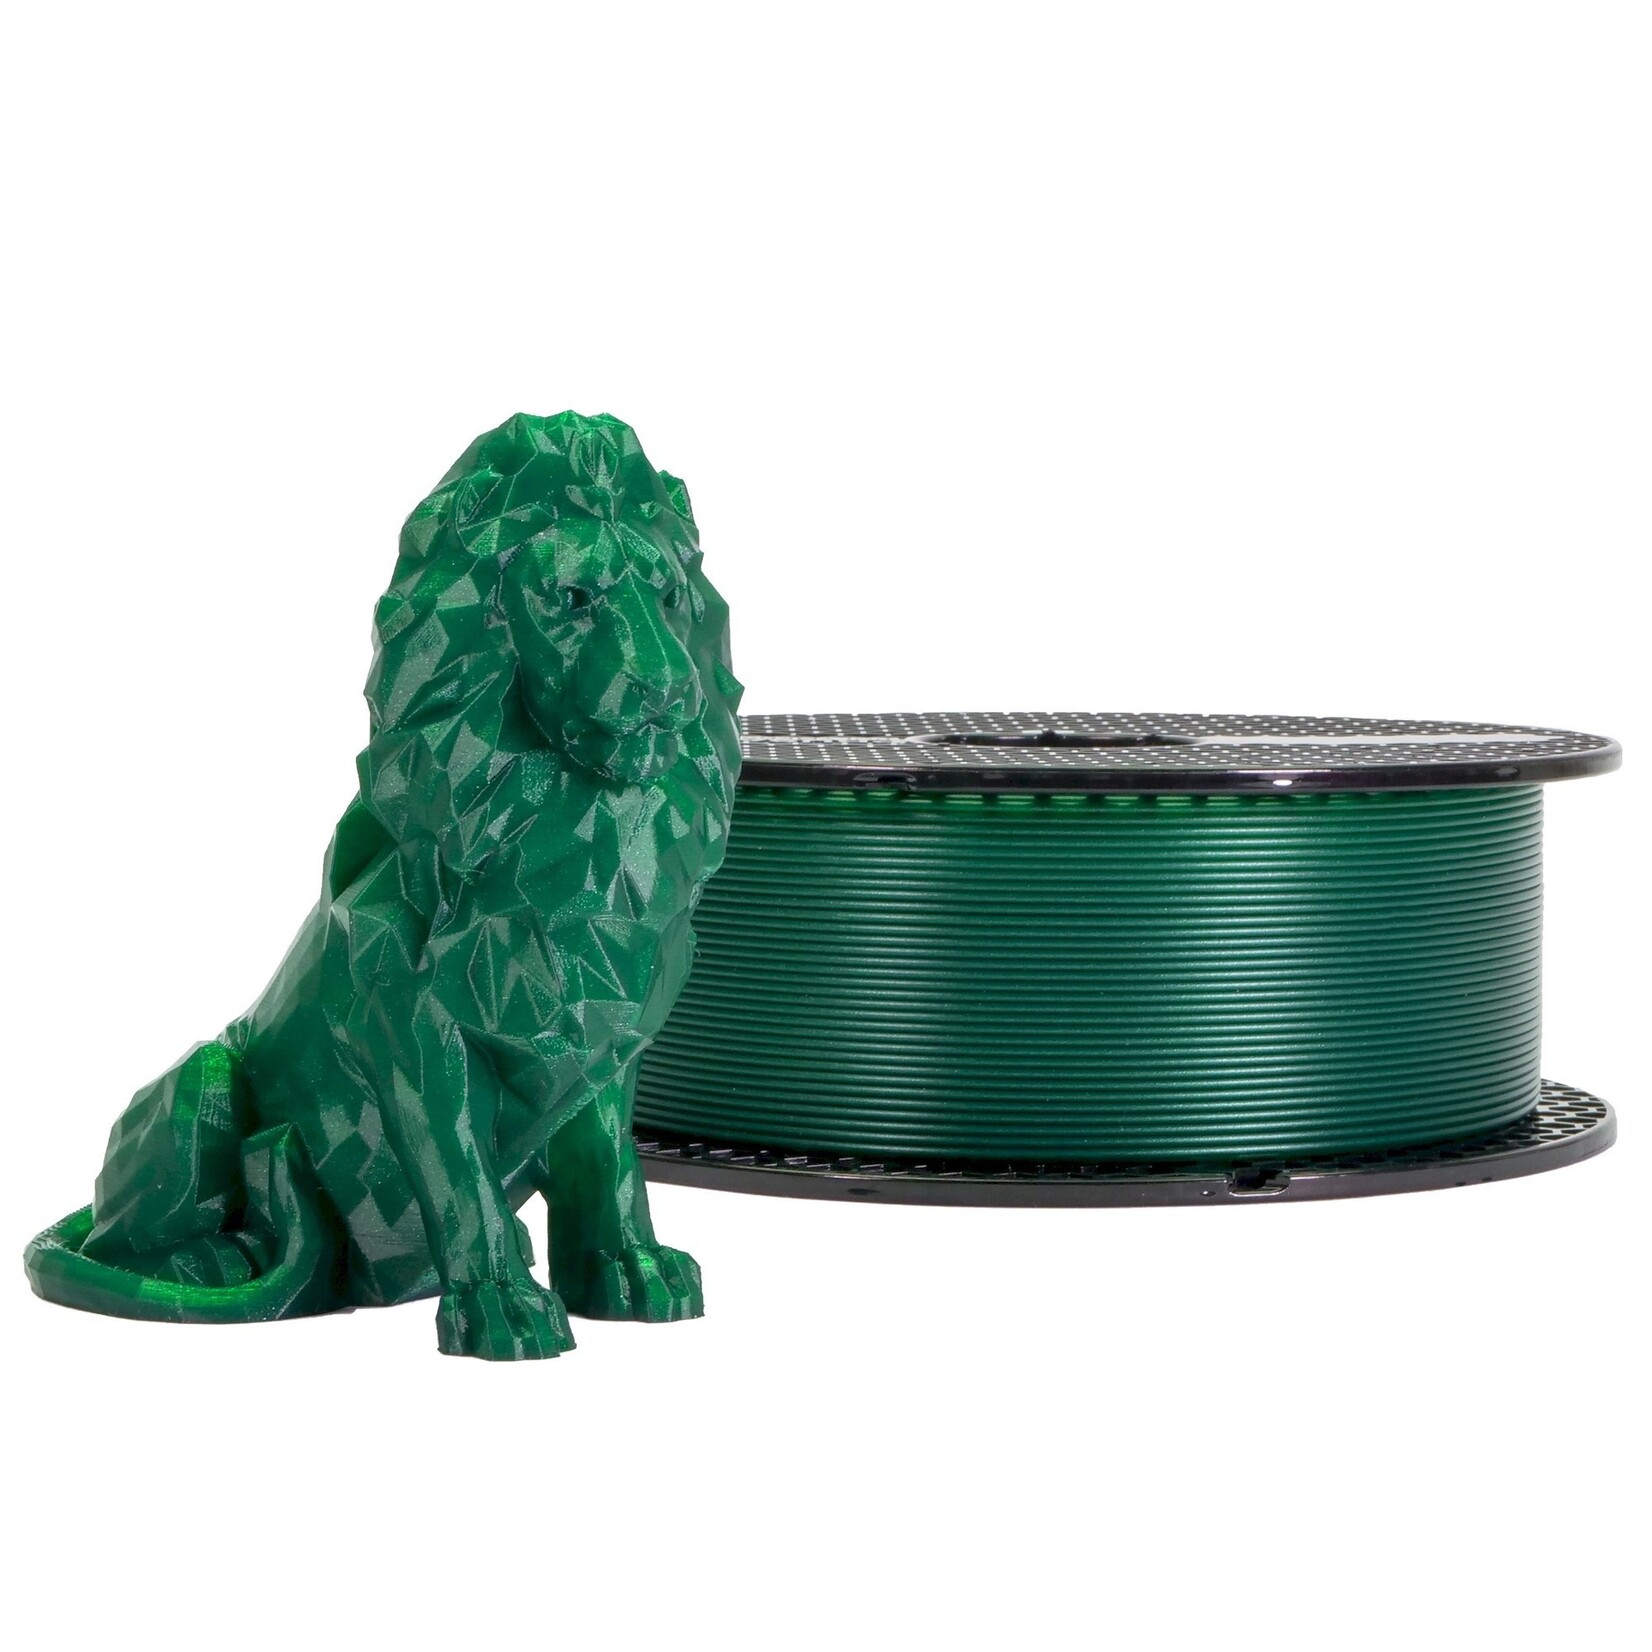 Prusa Research 1.75mm PLA 3d printer filament Prusament opal green (glitter) 1kg